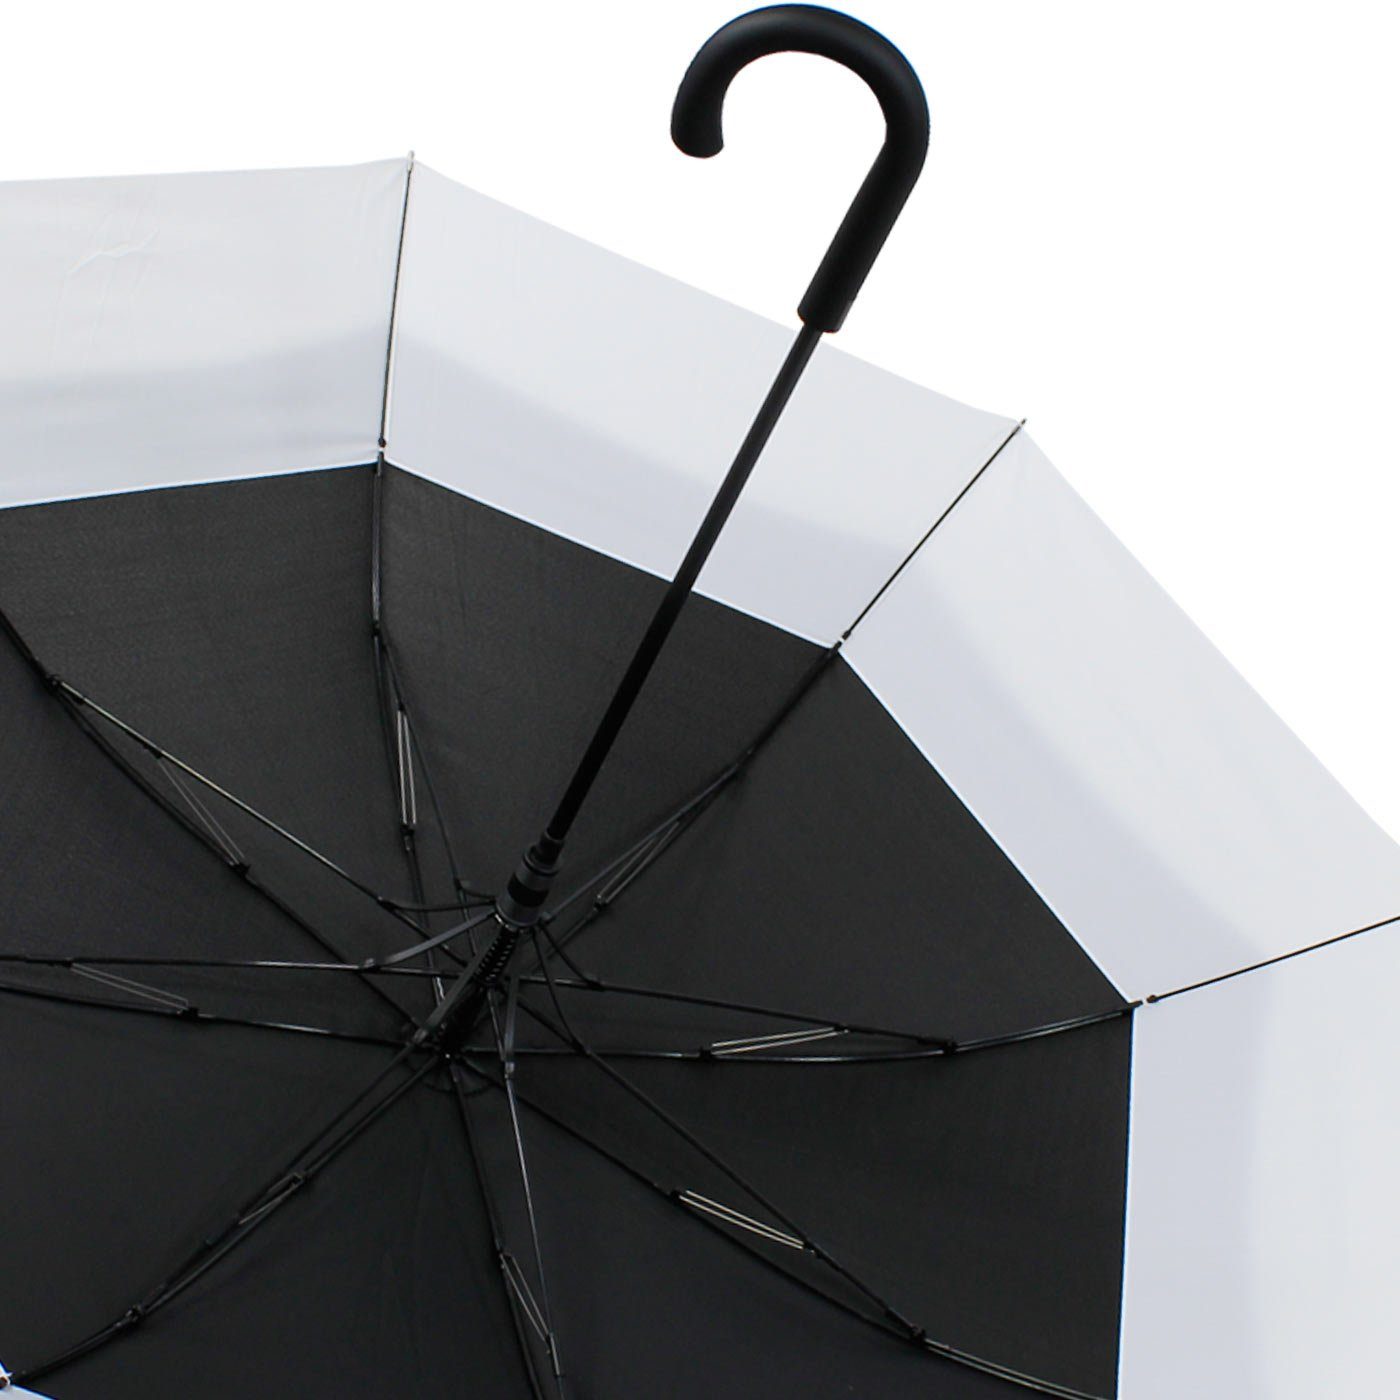 Automatik, - Schirm iX-brella to expandierender mit schwarz-weiß XXL Move zweifarbig Langregenschirm